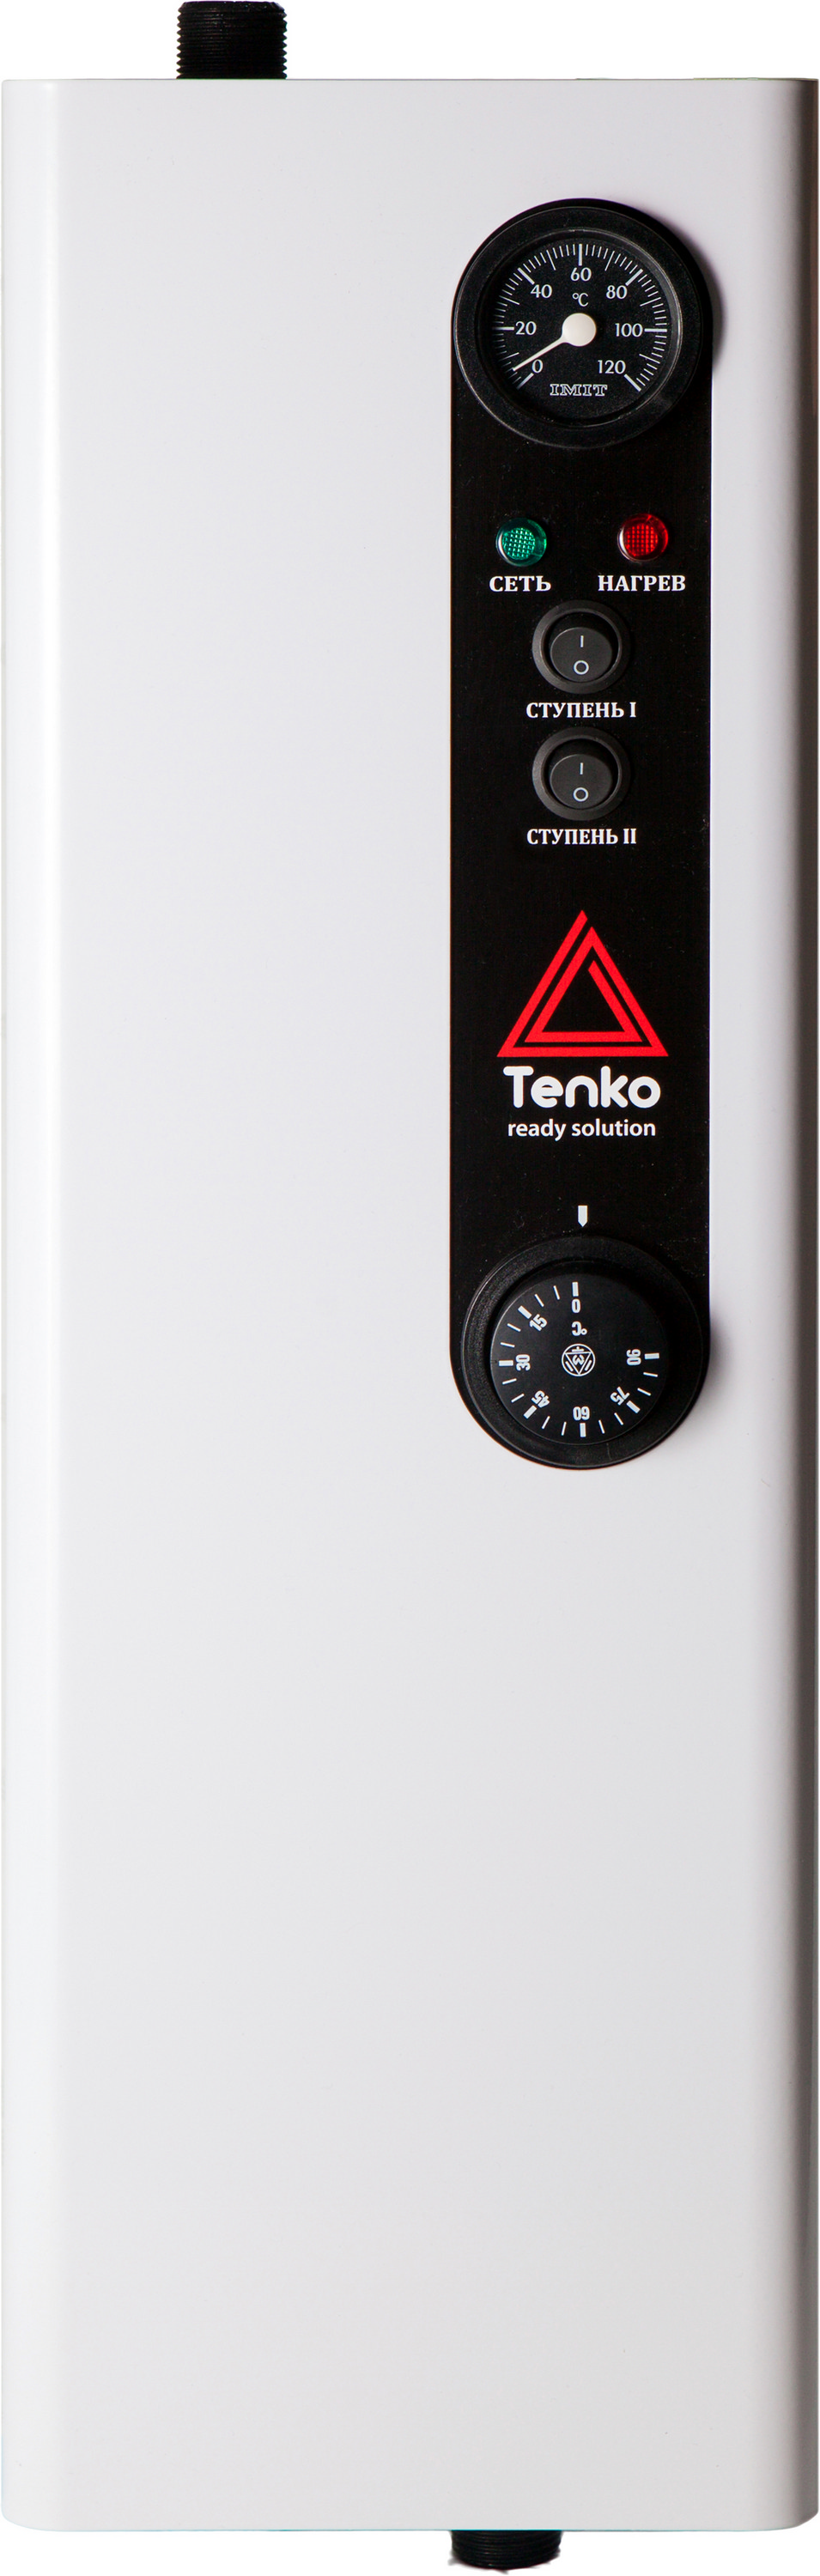 Отзывы котел tenko электрический Tenko Эконом 6 220 в Украине